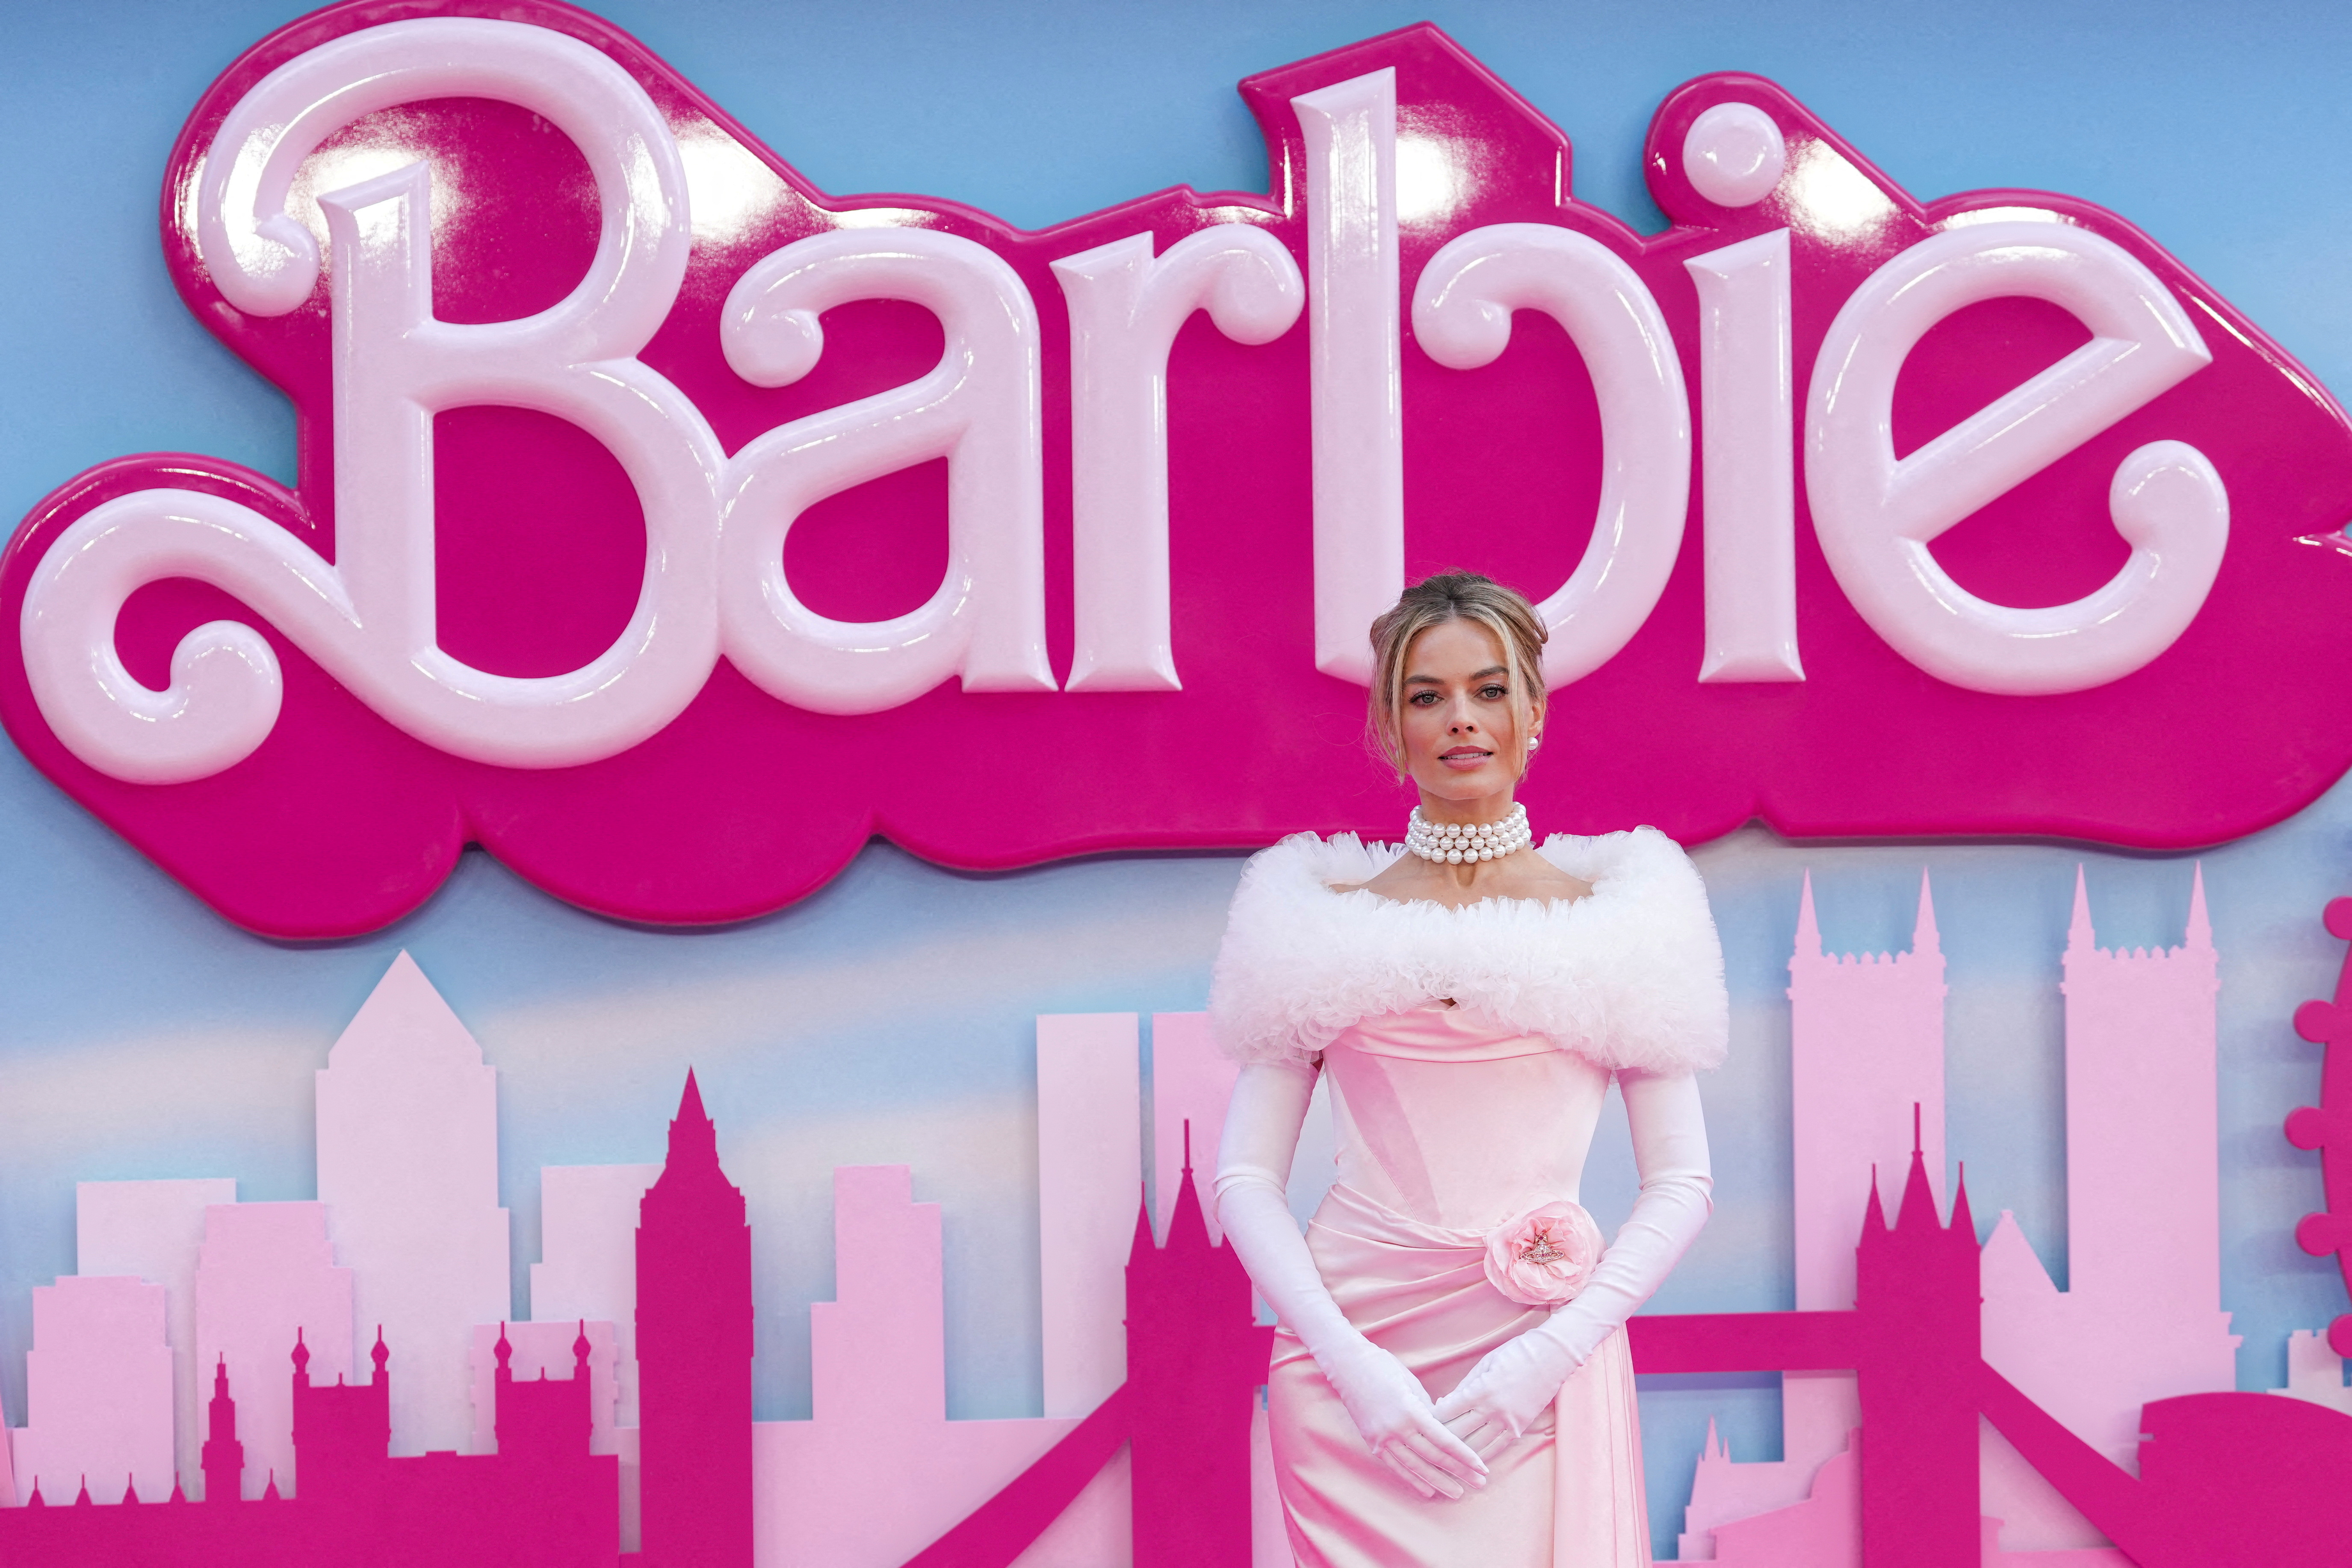 Premiere on "Barbie" in London